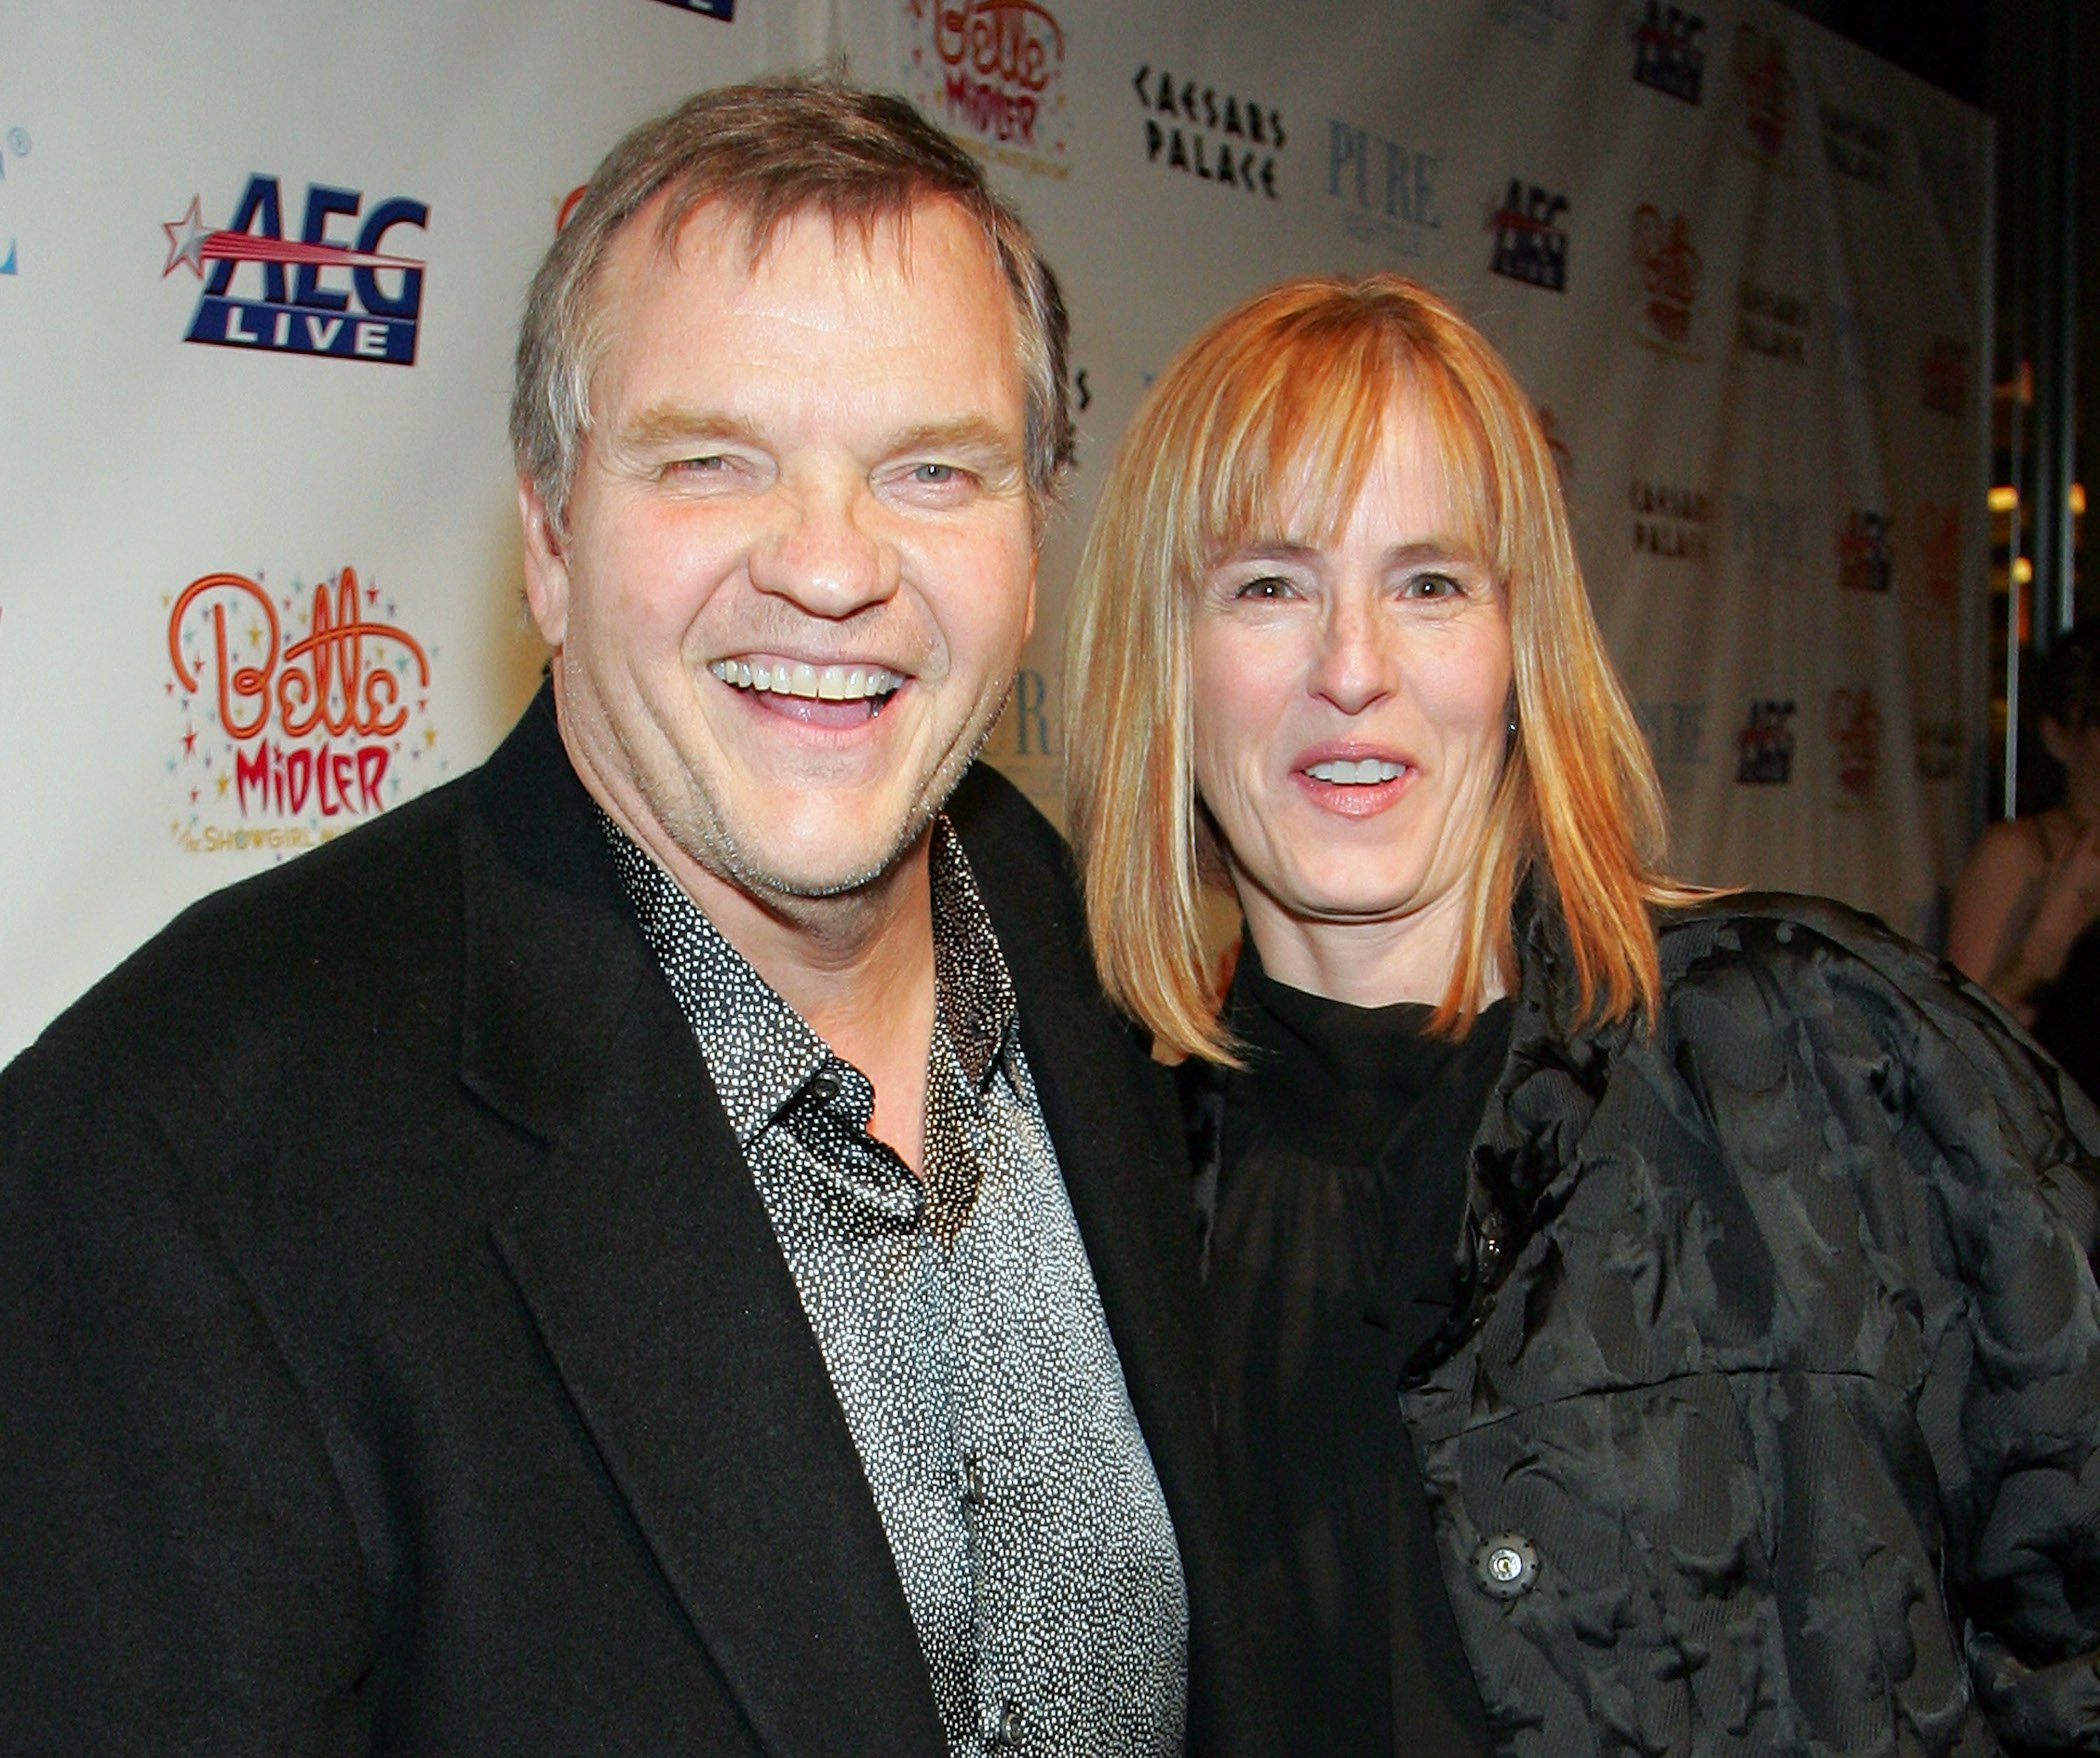 Actor/singer Meat Loaf (L) and wife Deborah Gillespie smiling together at a premiere